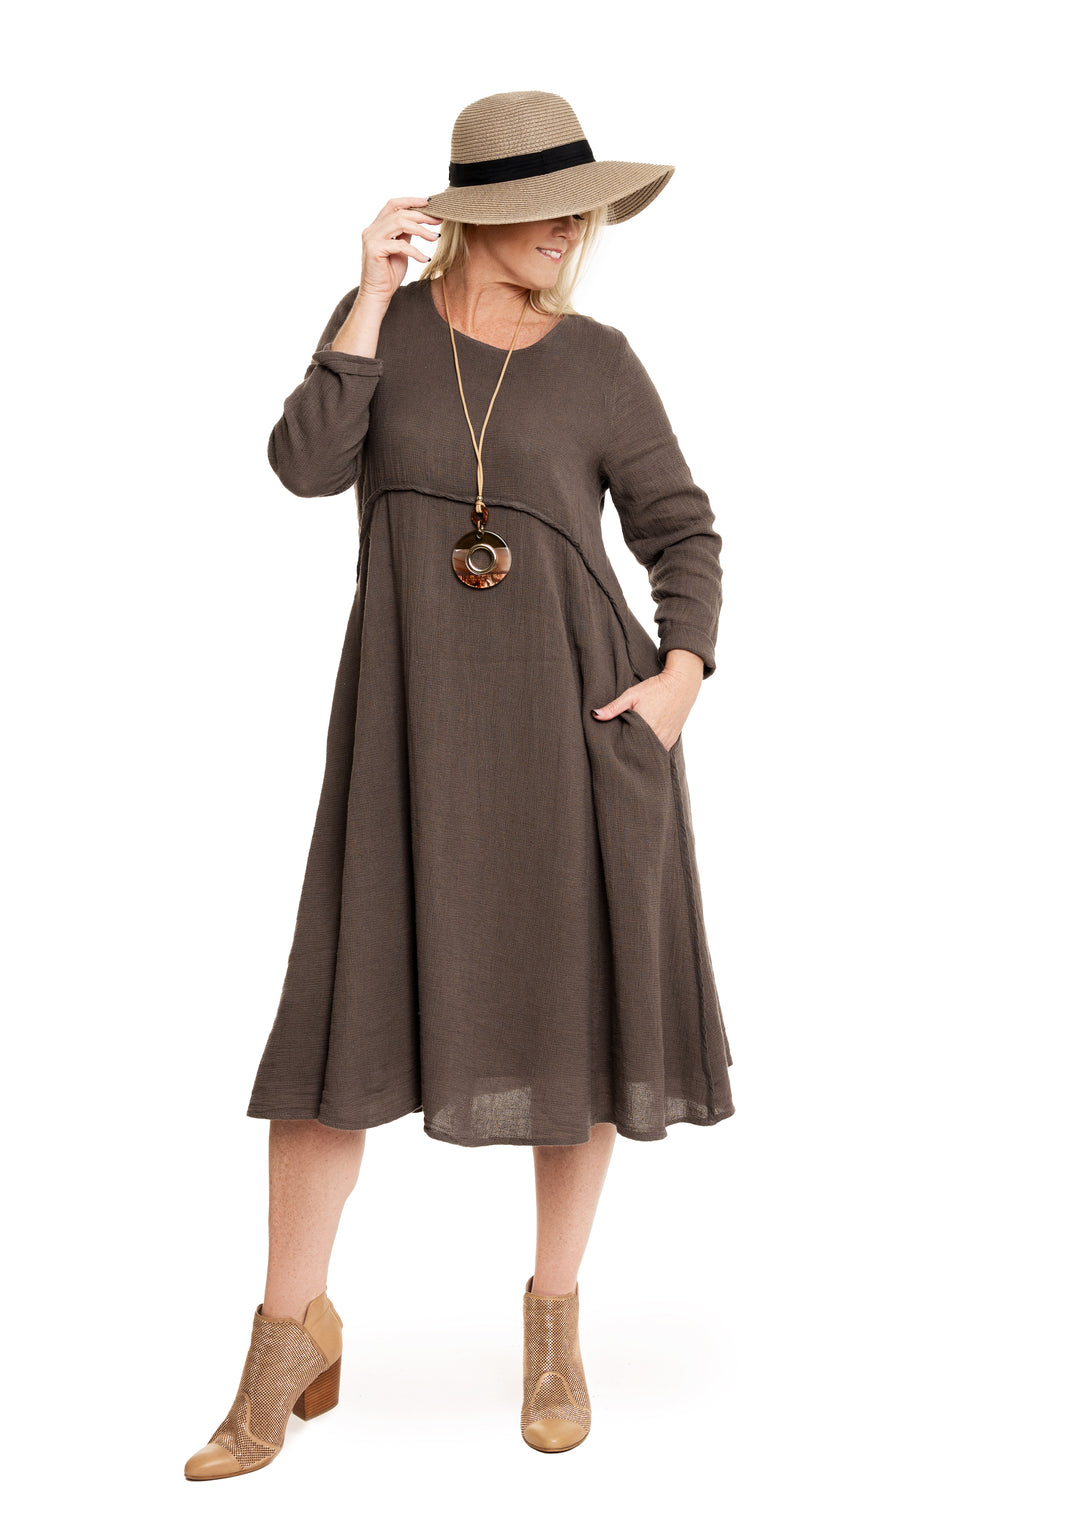 Clara Dress in Truffle - Imagine Fashion